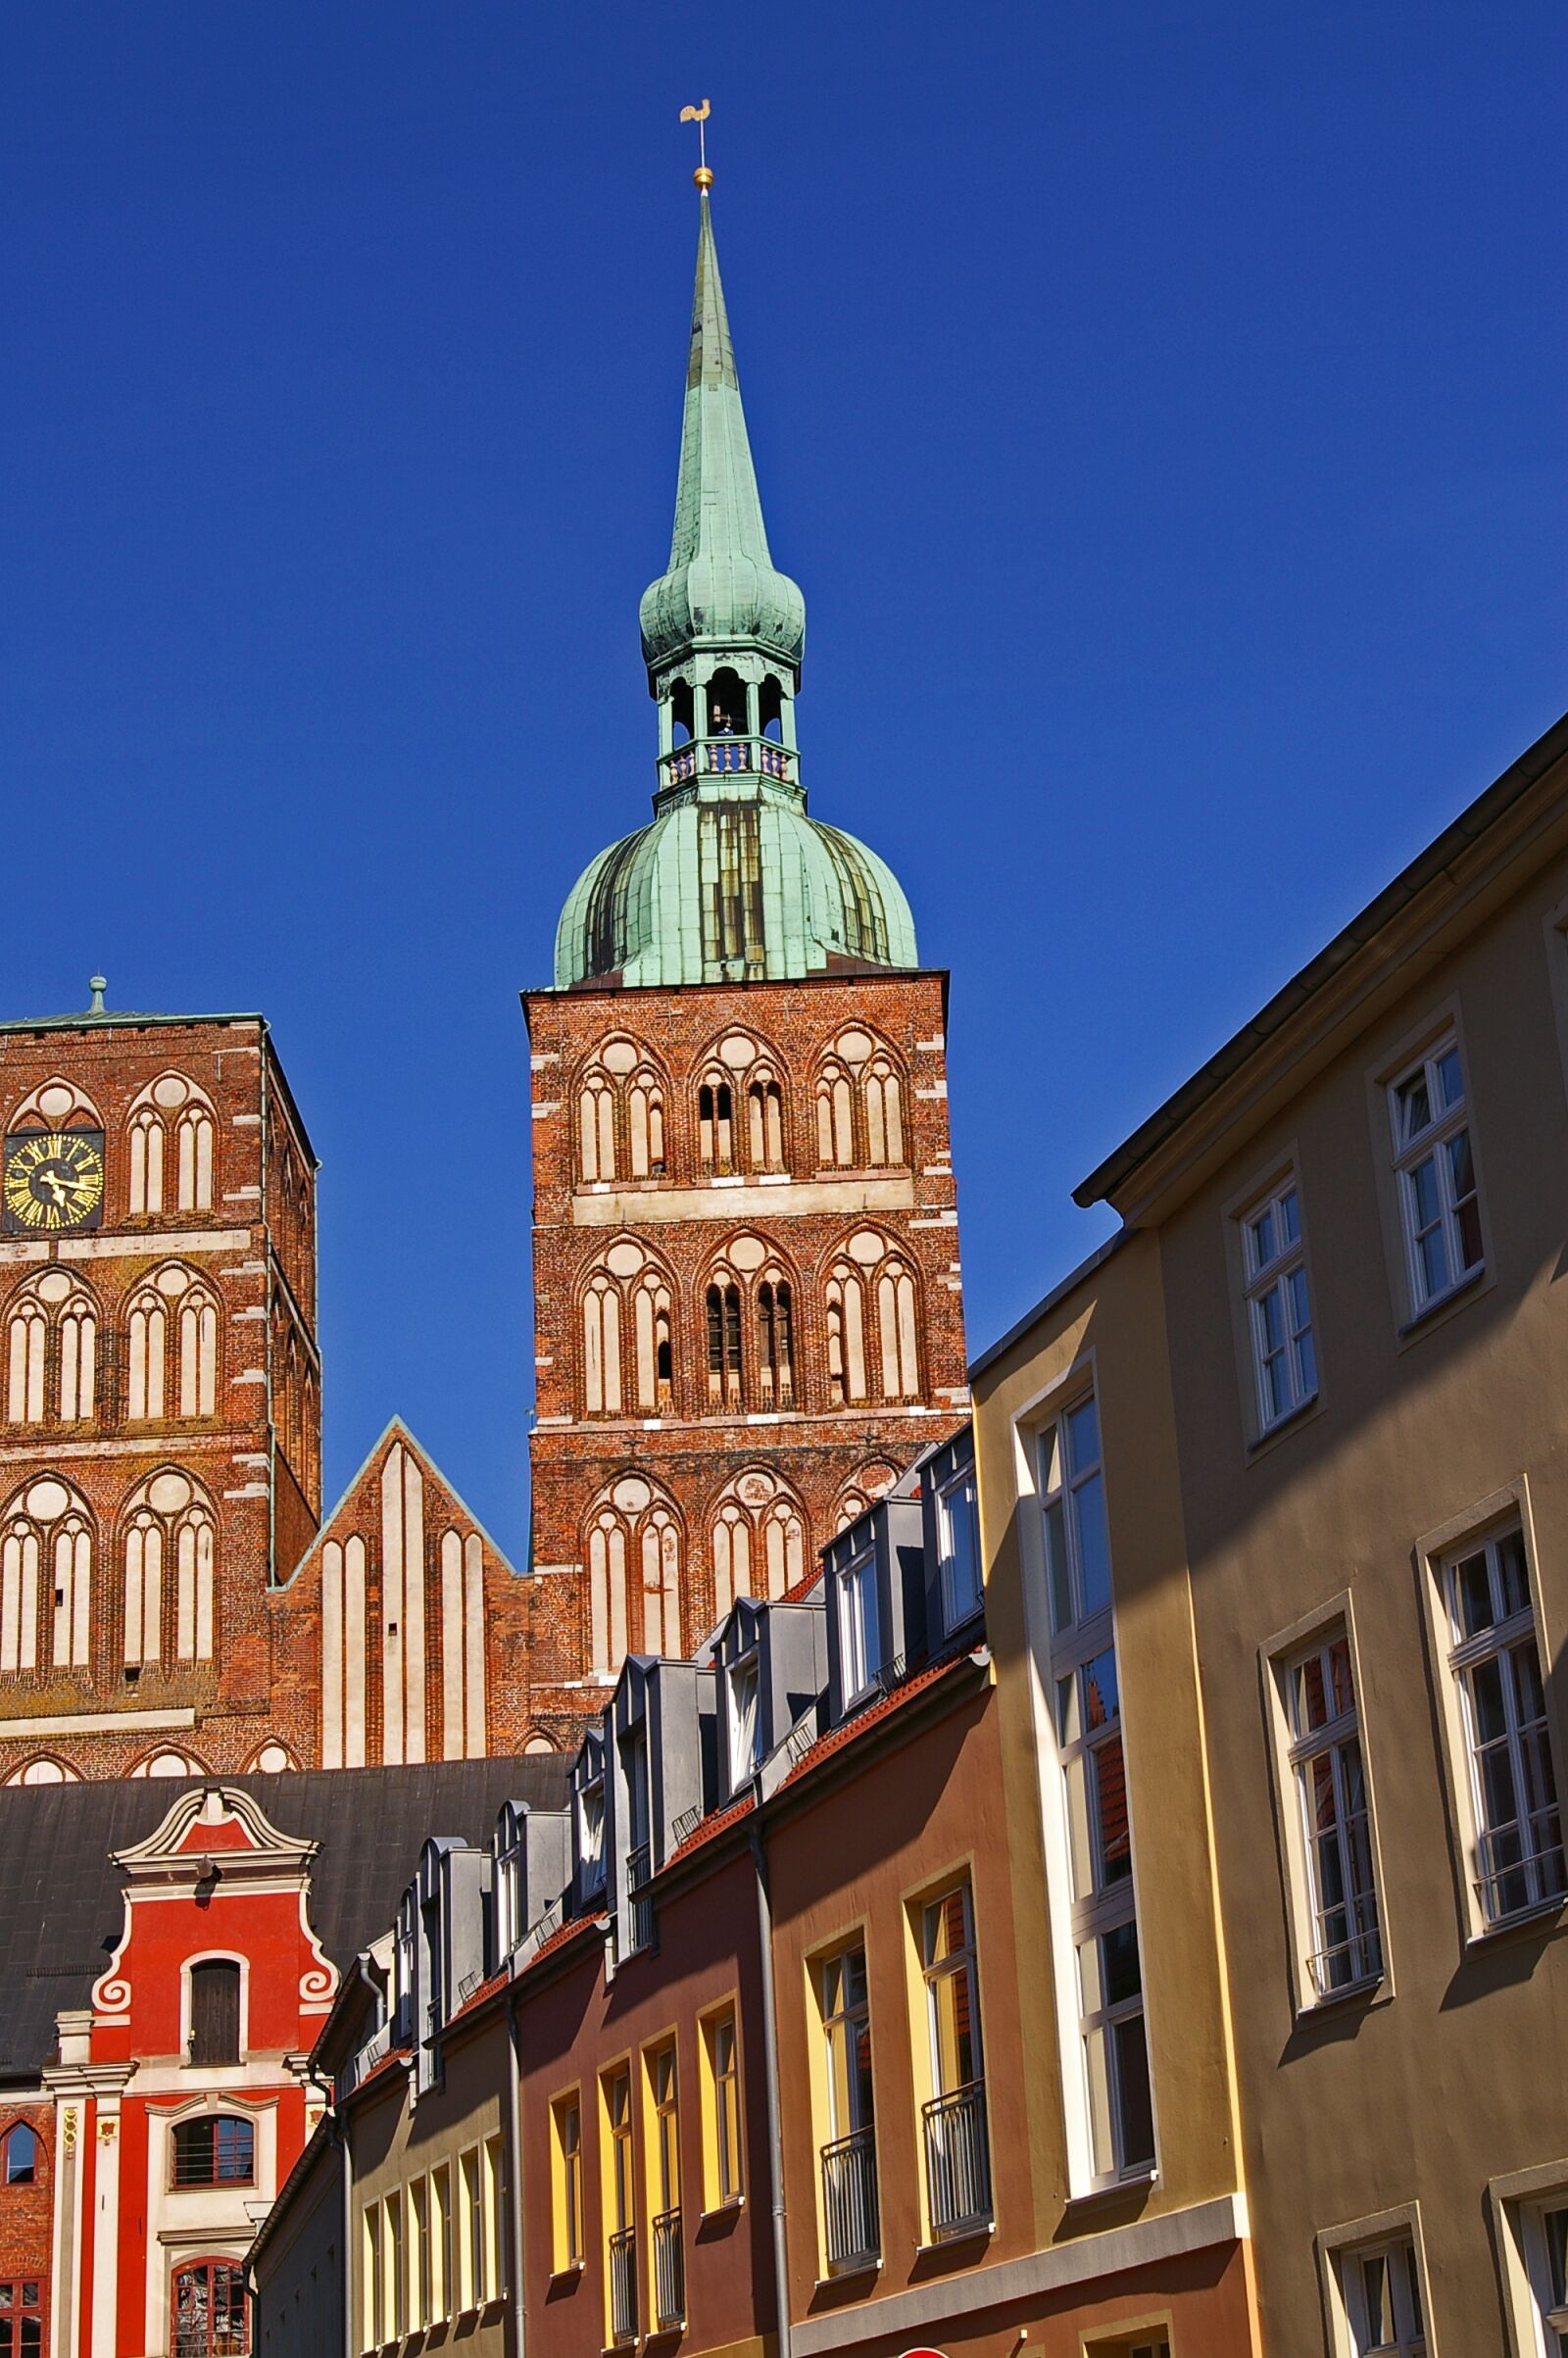 Pentax *ist DL2 sample photo. Stralsund, nikolai church, architecture photography